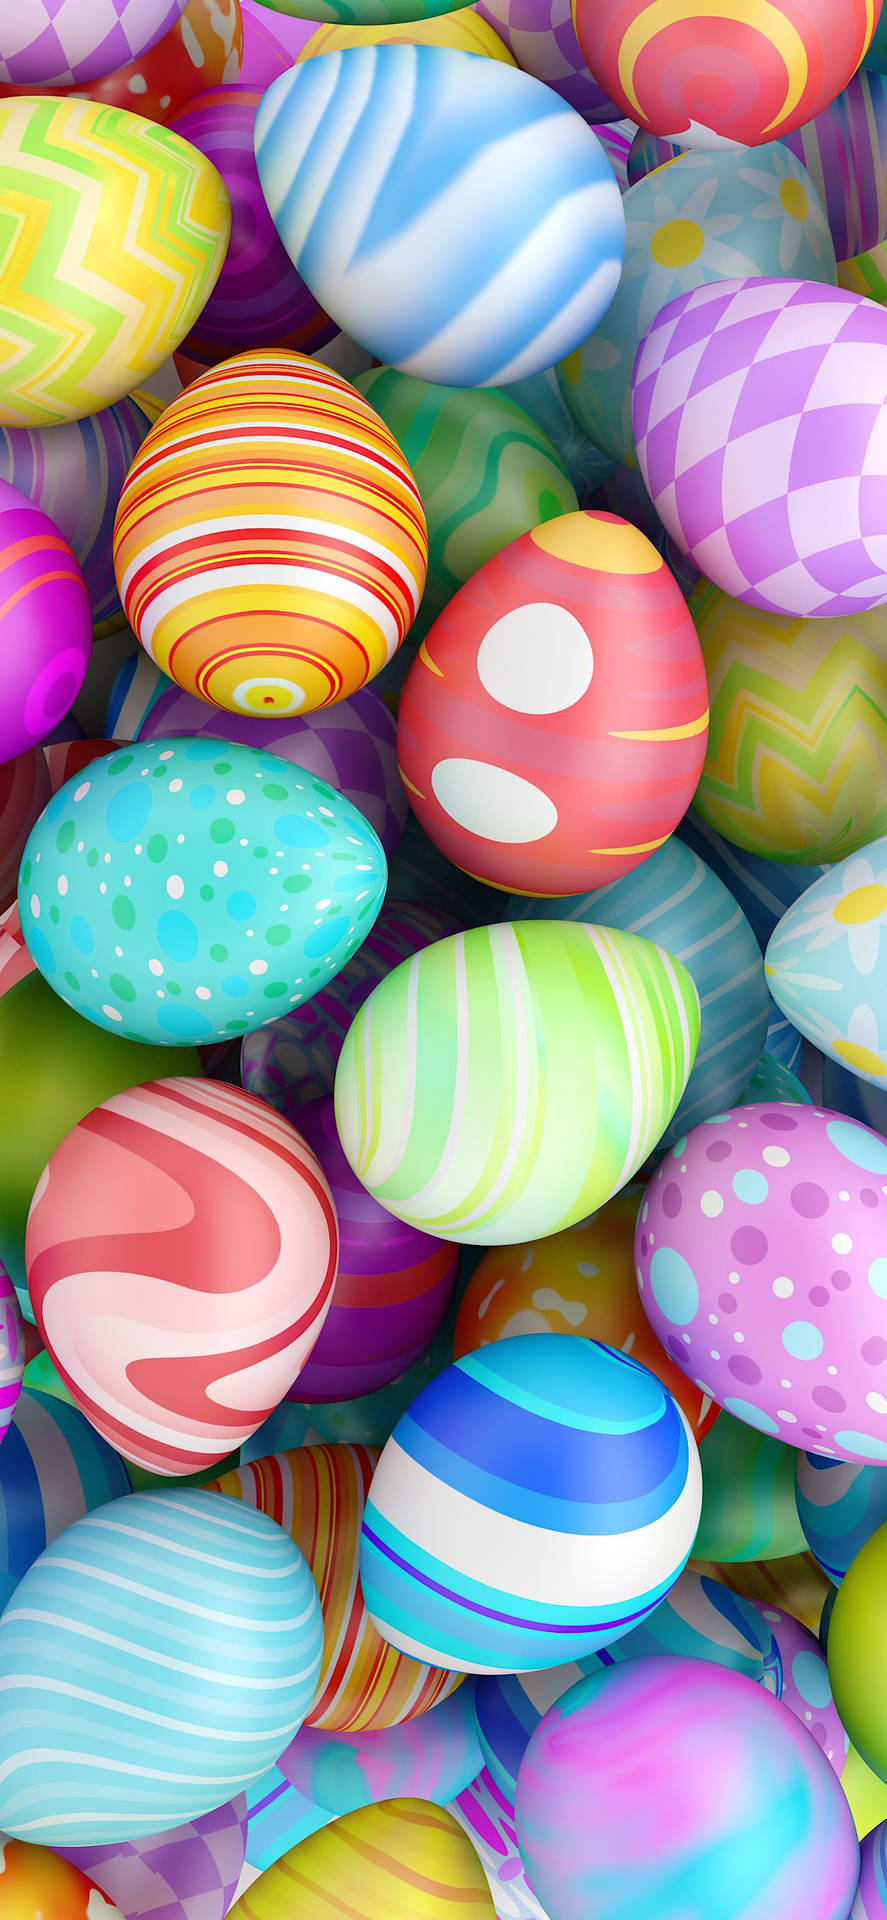 Unmontón De Huevos De Pascua Coloridos Fondo de pantalla